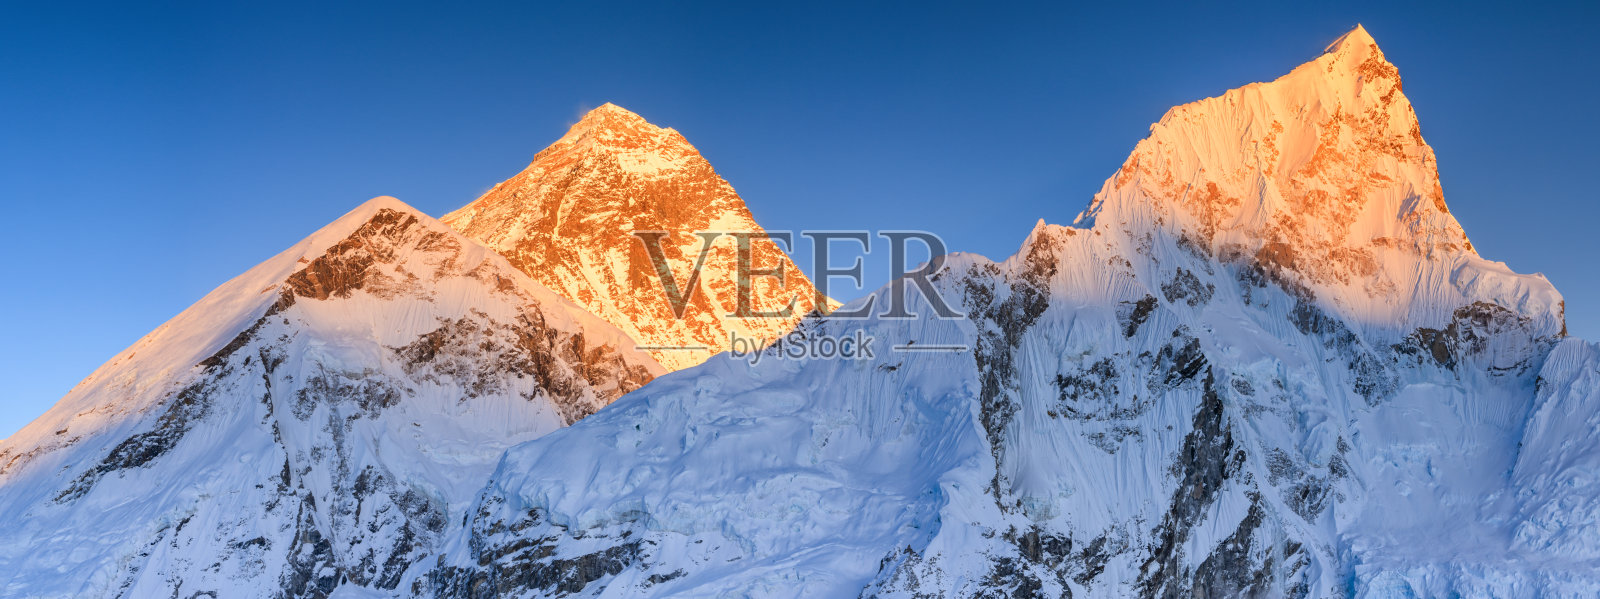 世界之巅珠穆朗玛峰上的日落照片摄影图片